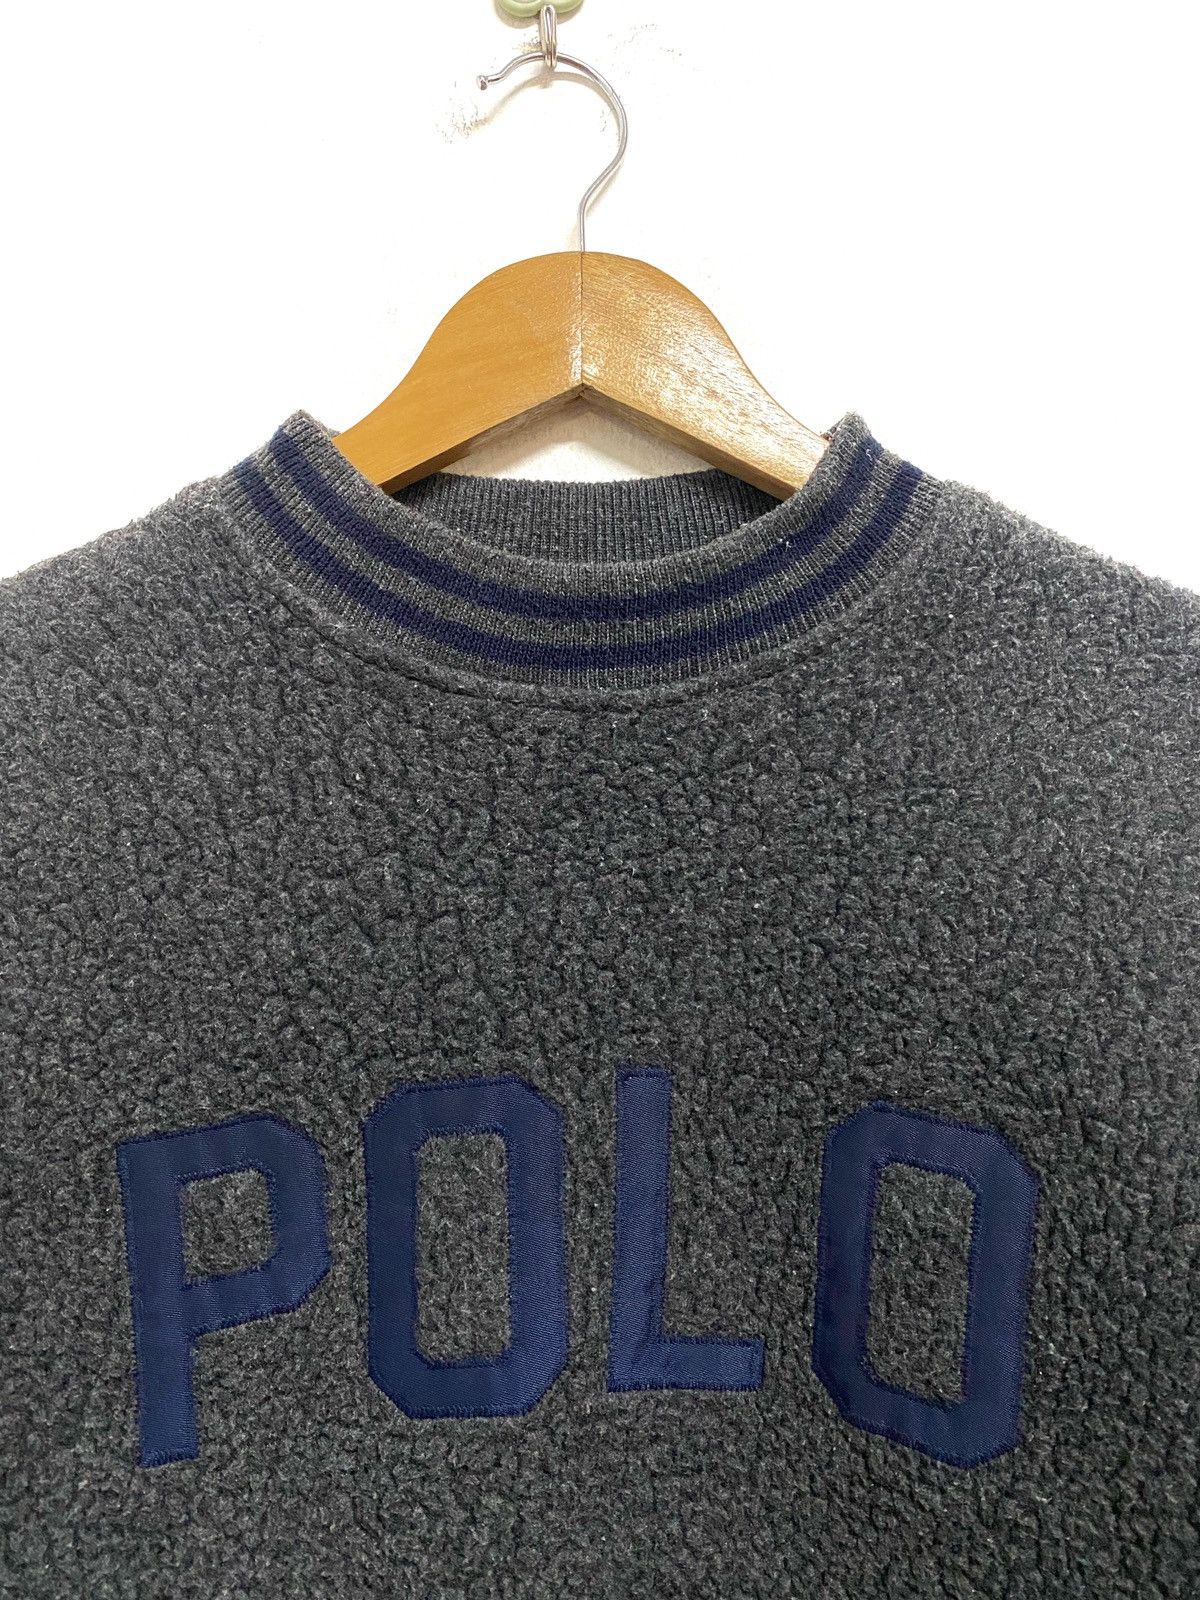 Vintage Polo Ralph Lauren Gray Fleece Spellout Sweatshirt - 3